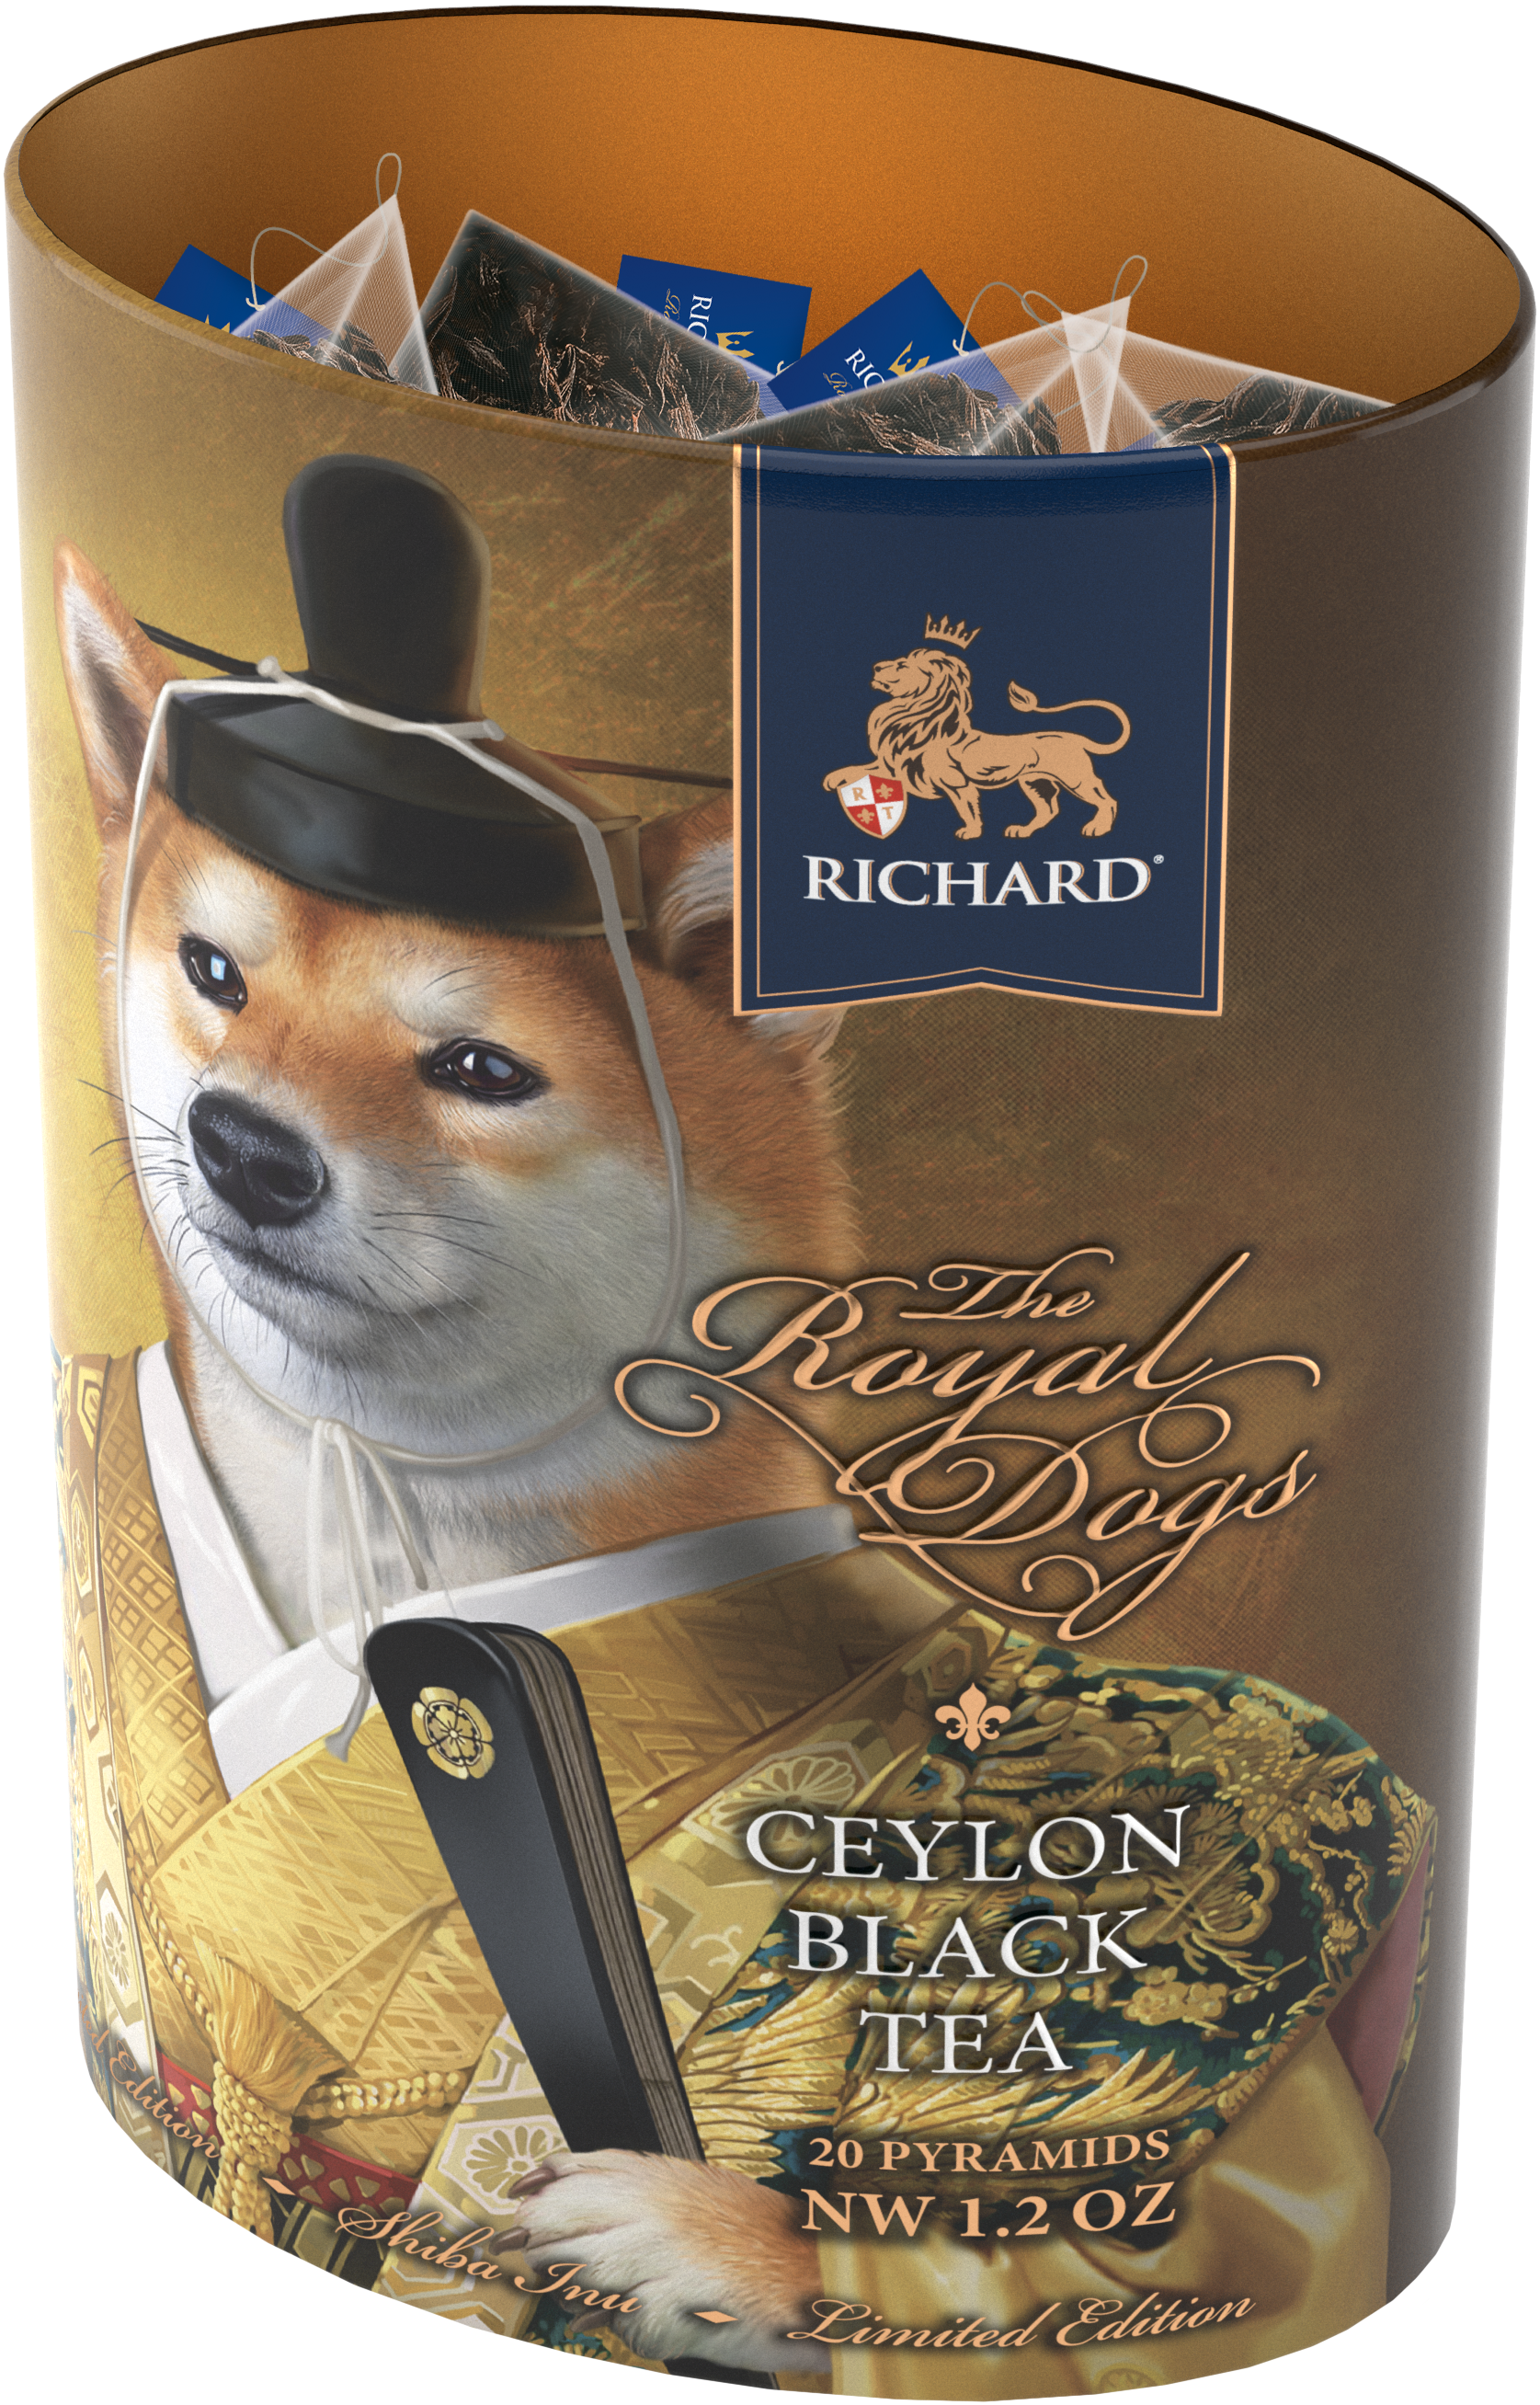 Richard Royal kutyák, fekete tea, 34g, 20 piramis-filter, Shiba Inu - RichardTeavn - vásároljon a 2990.00 Ft